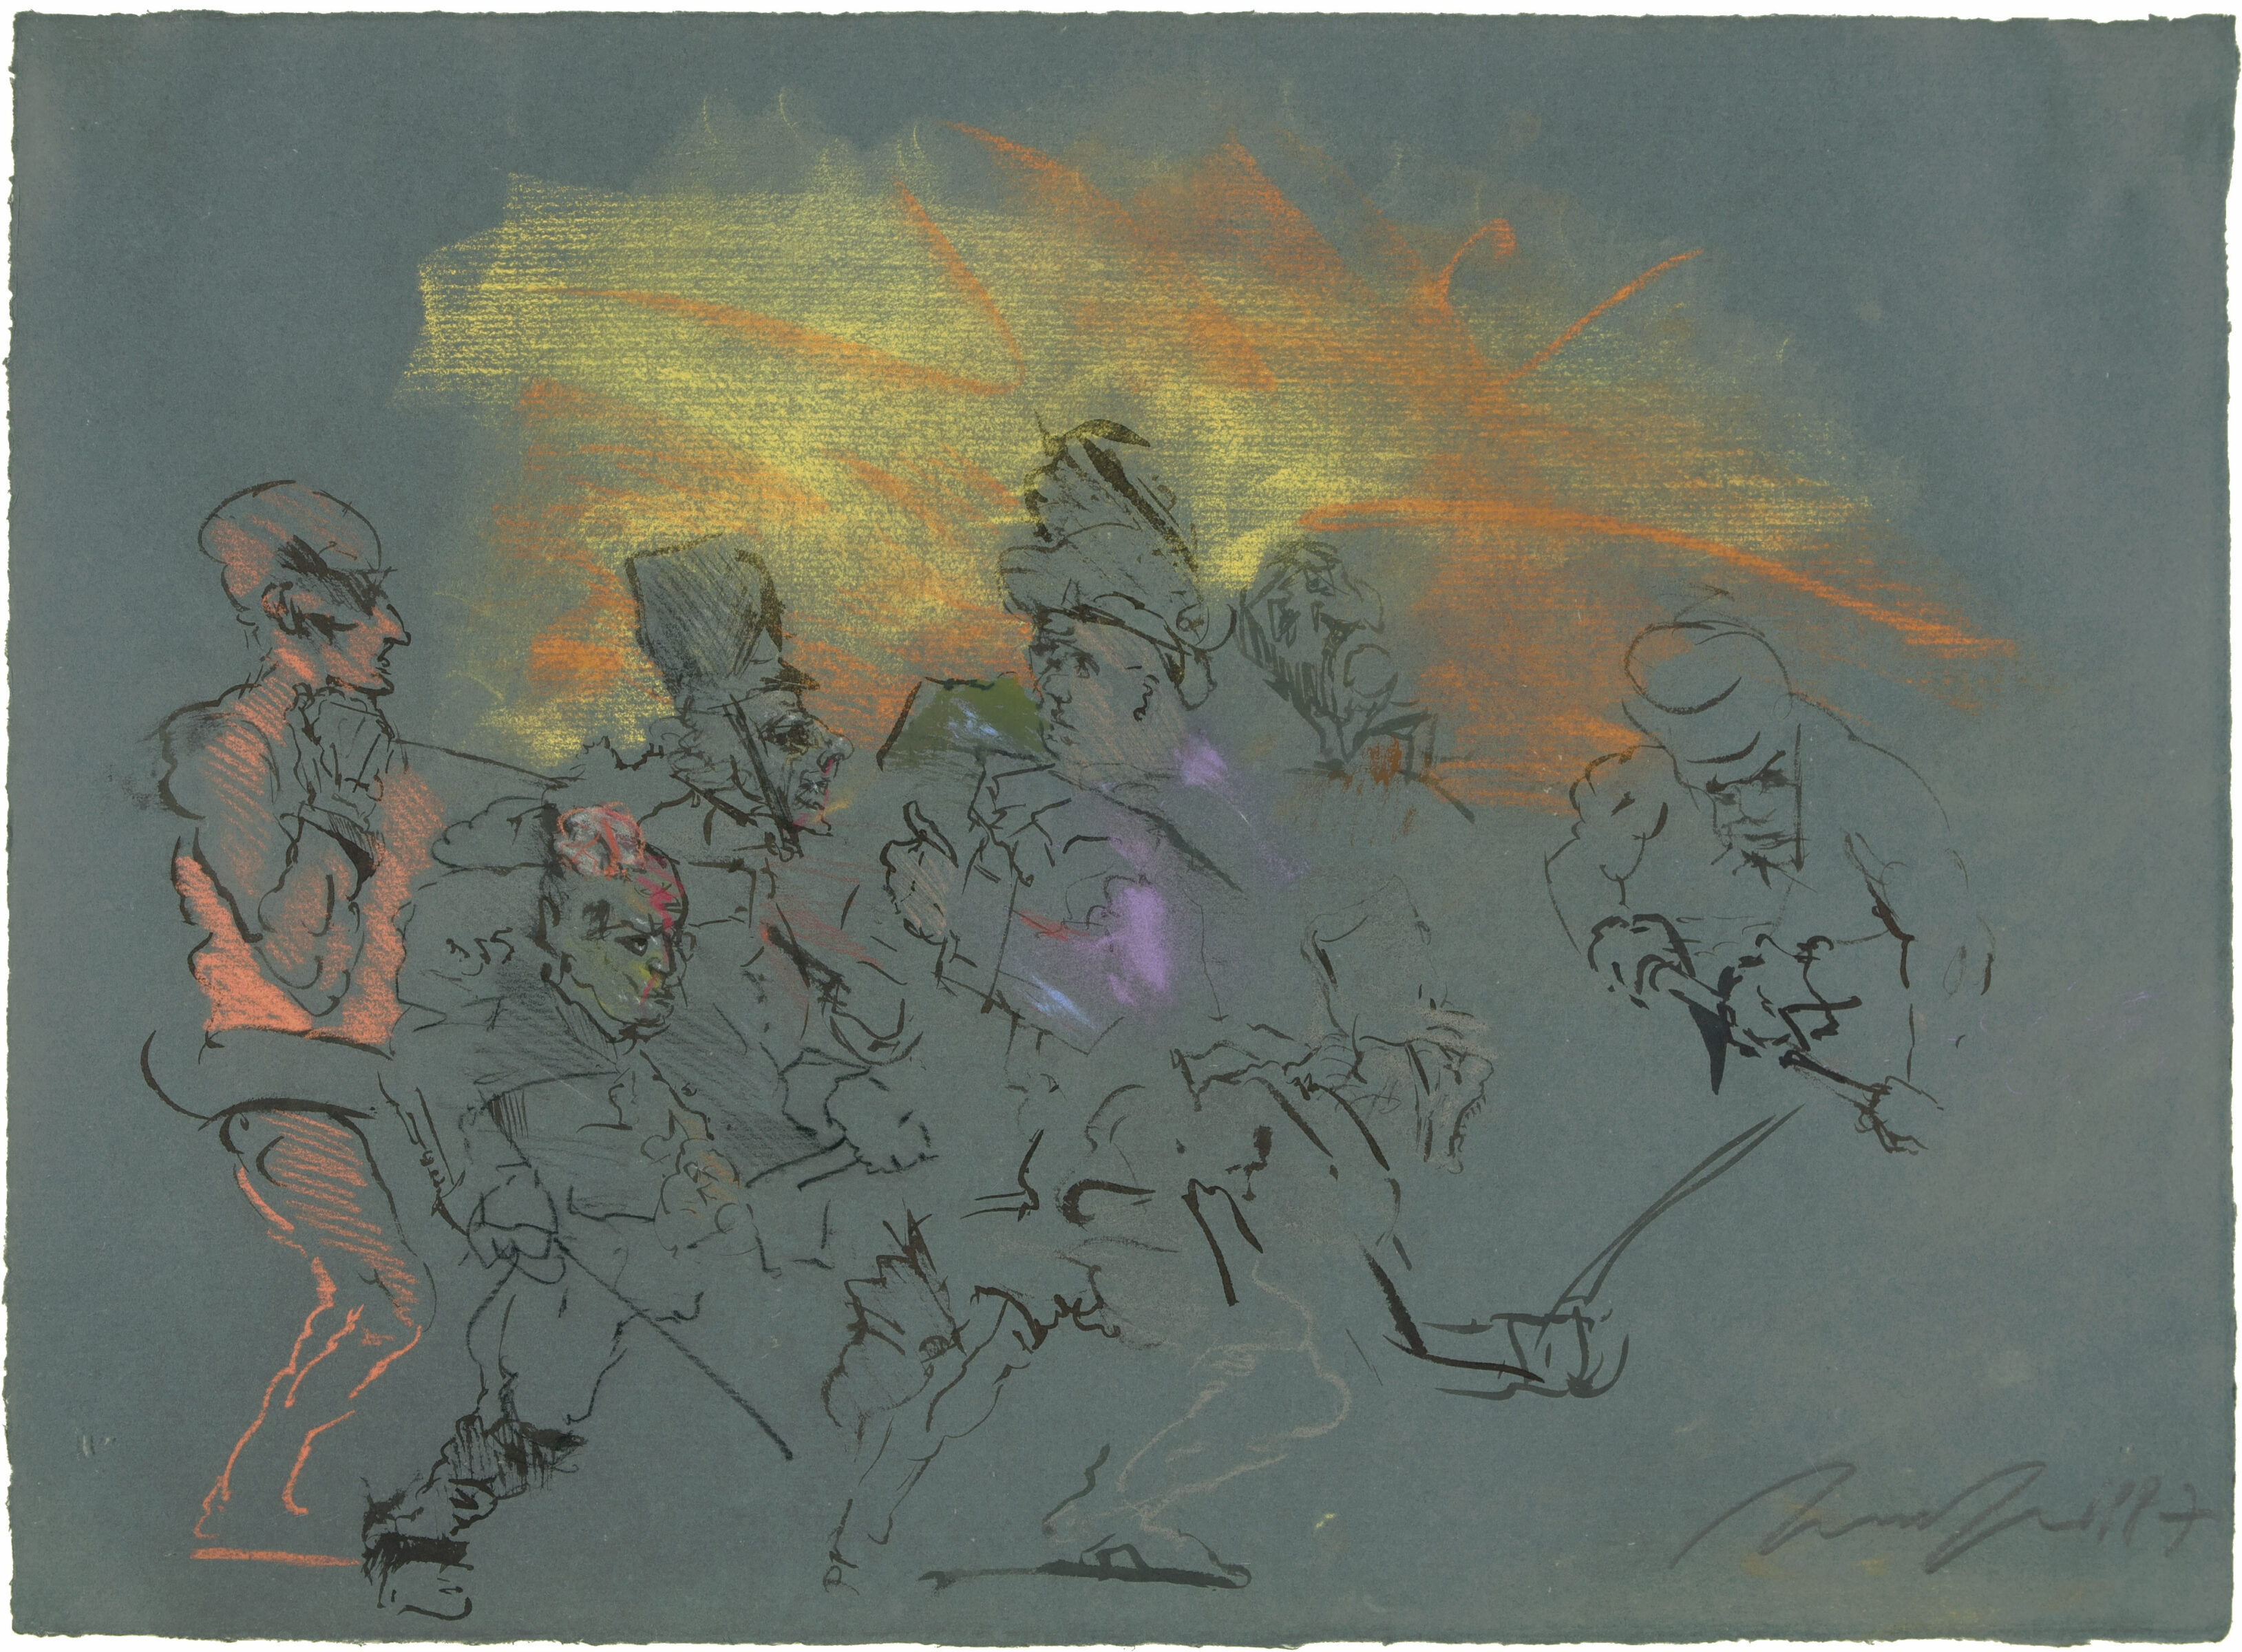 Das Glück wendet sich. Pastell, Pinsel in Tusche u. Bleistift auf dunkelgrünem Bütten. 1987. 49 x 67,2 cm, im Passepartout freigestellt. Unter Glas gerahmt - Alfred Hrdlicka